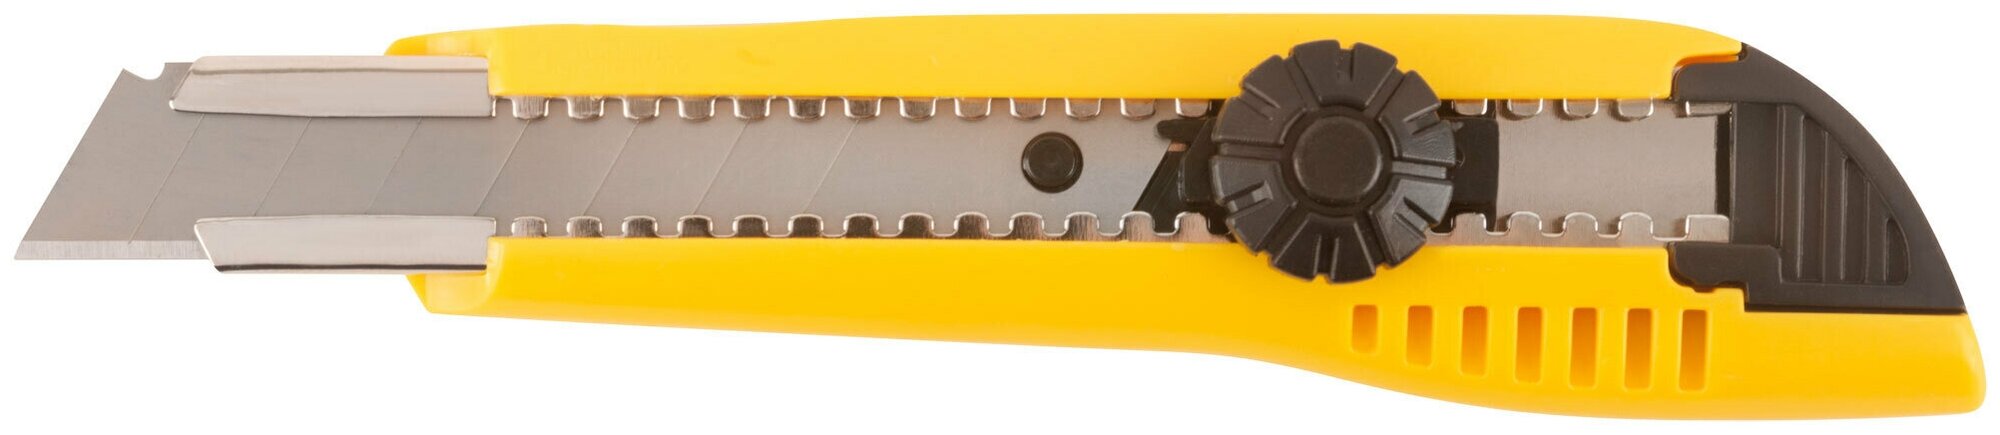 Нож технический 18 мм усиленный пластиковый, вращ. прижим 10242